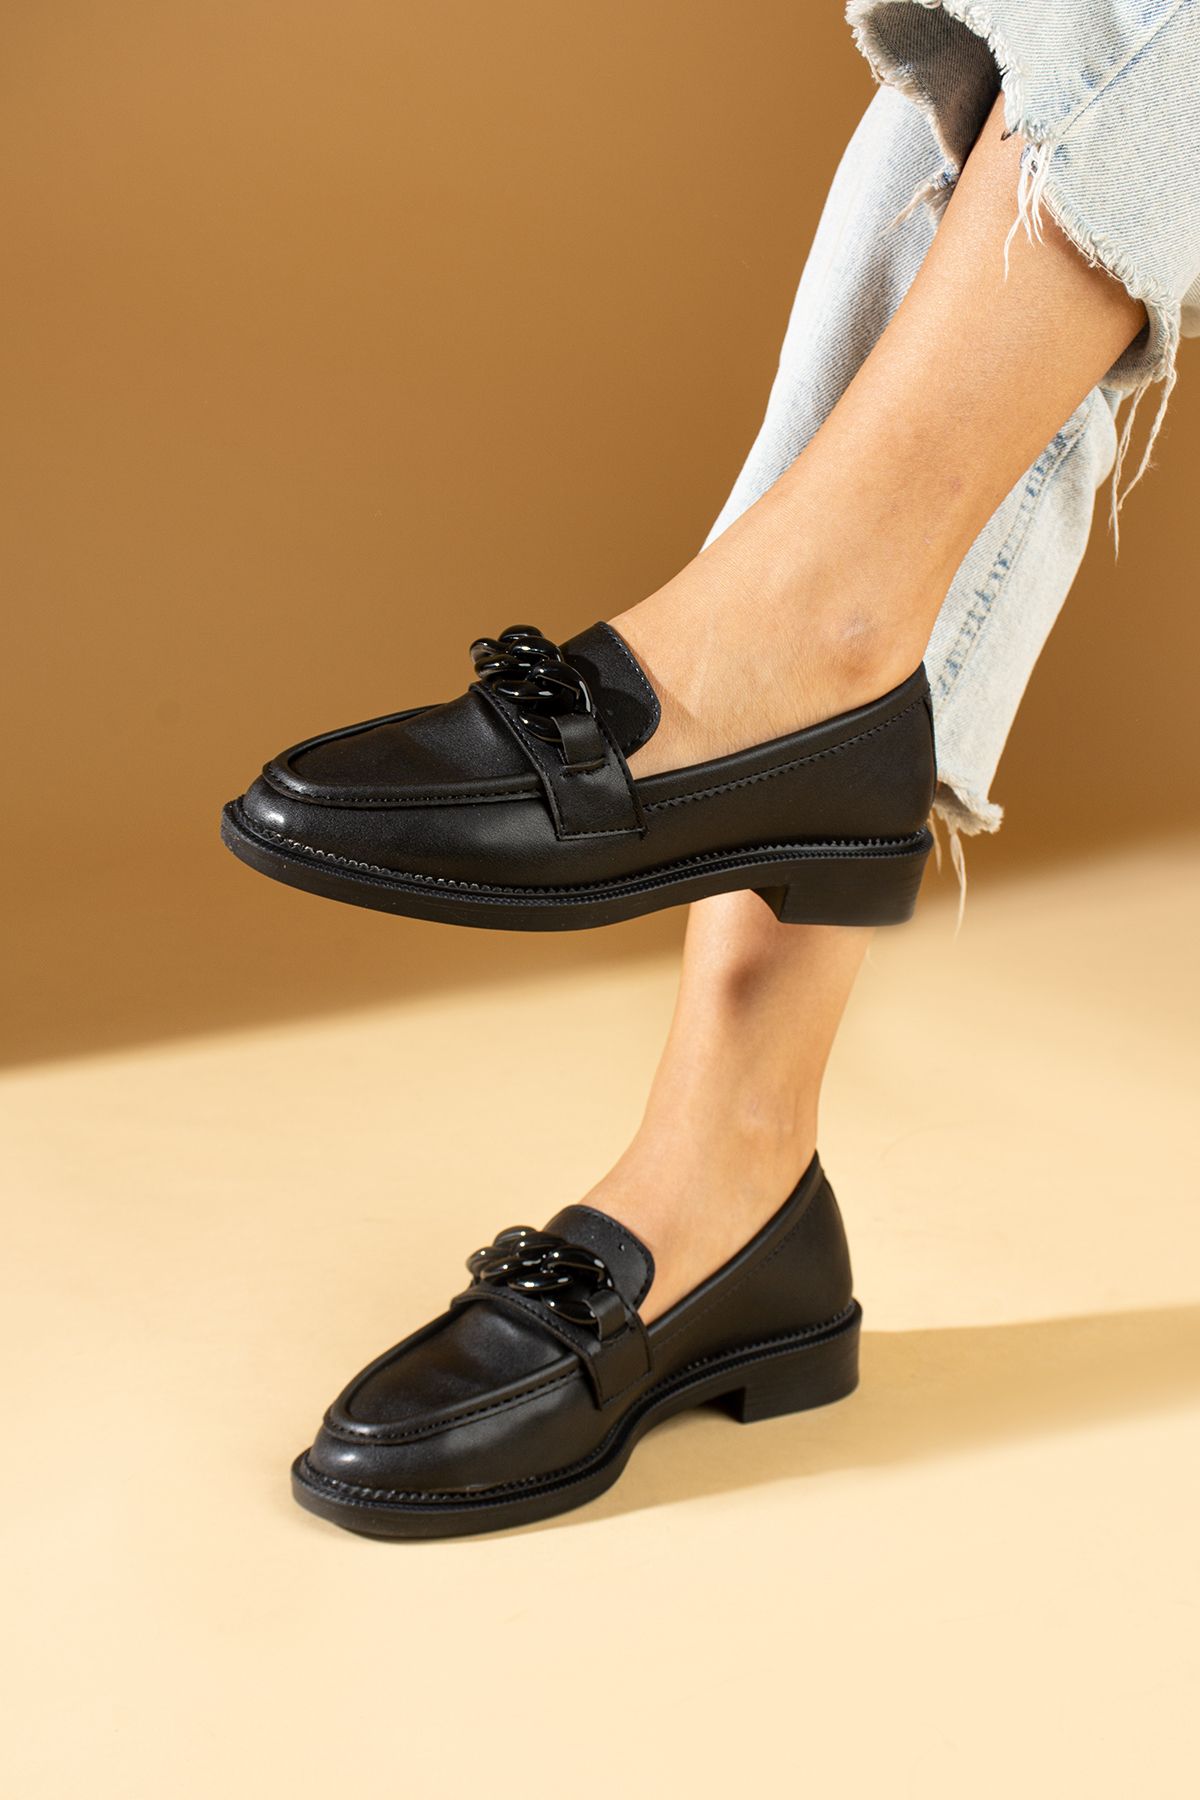 Pembe Potin Kadın Siyah Loafer Makosen Casual Tokalı Günlük Rahat Taban Ayakkabı